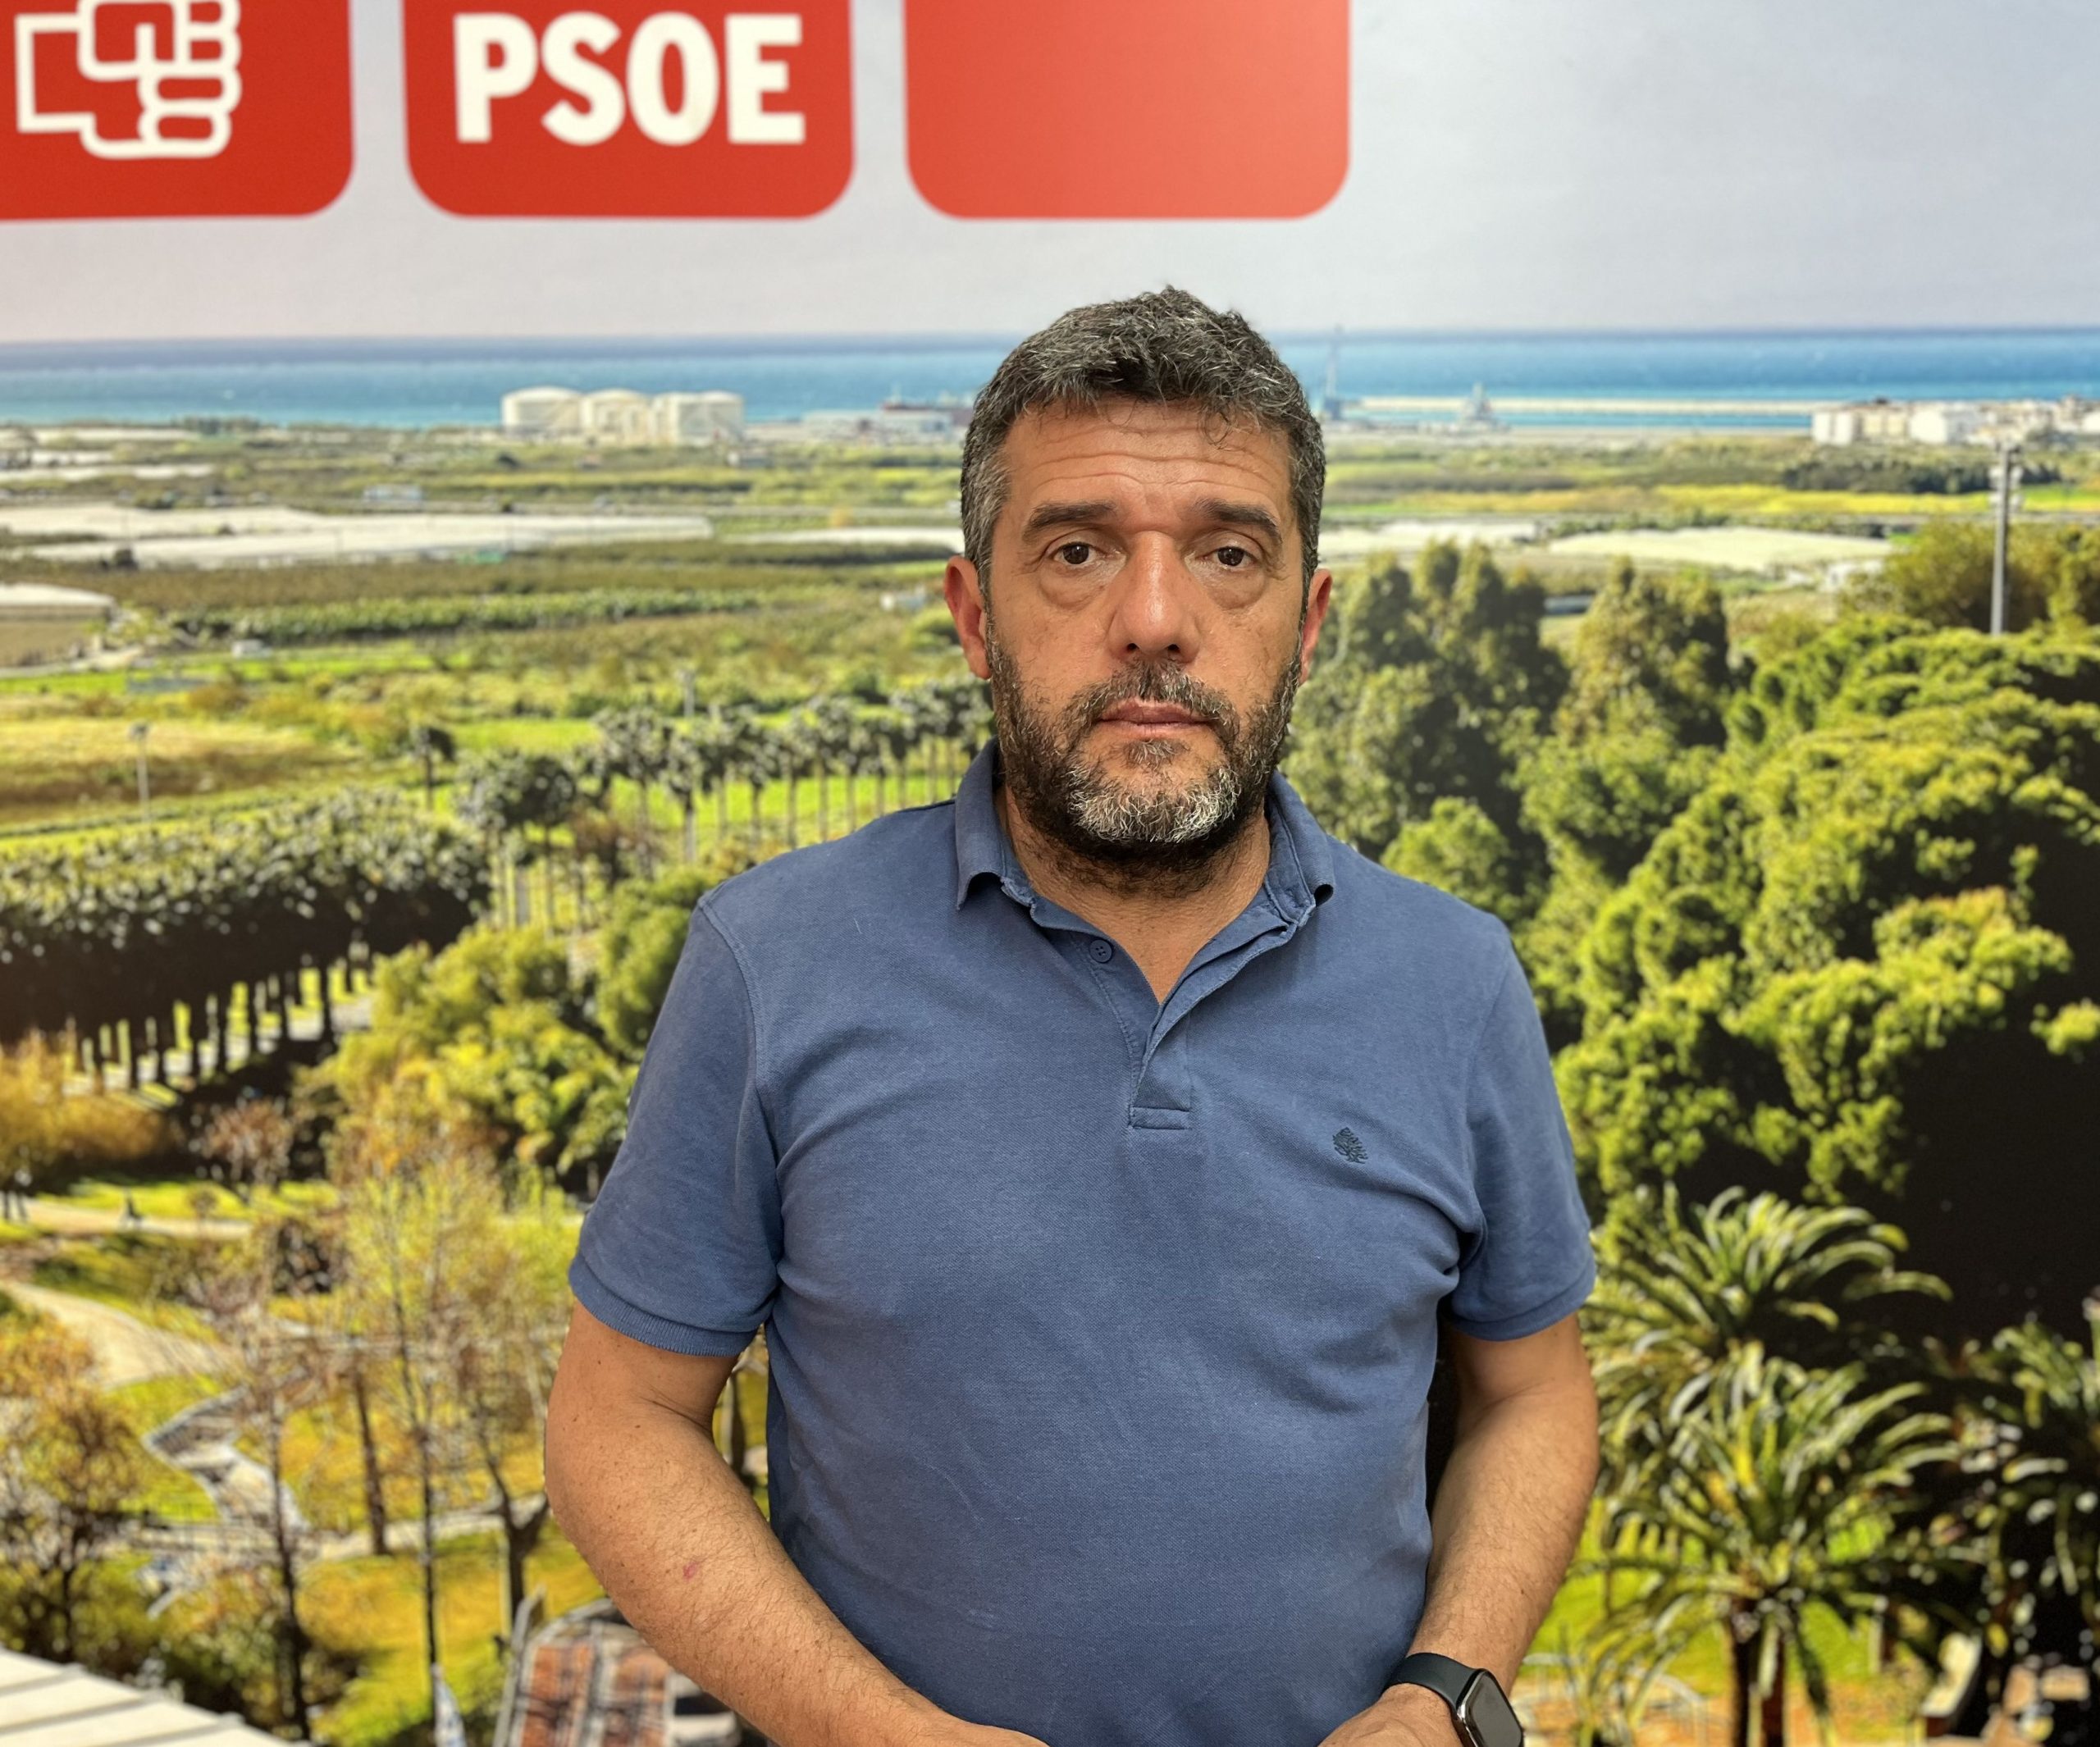 El PSOE pedirá en el Pleno mejoras para el barrio de La Nacla